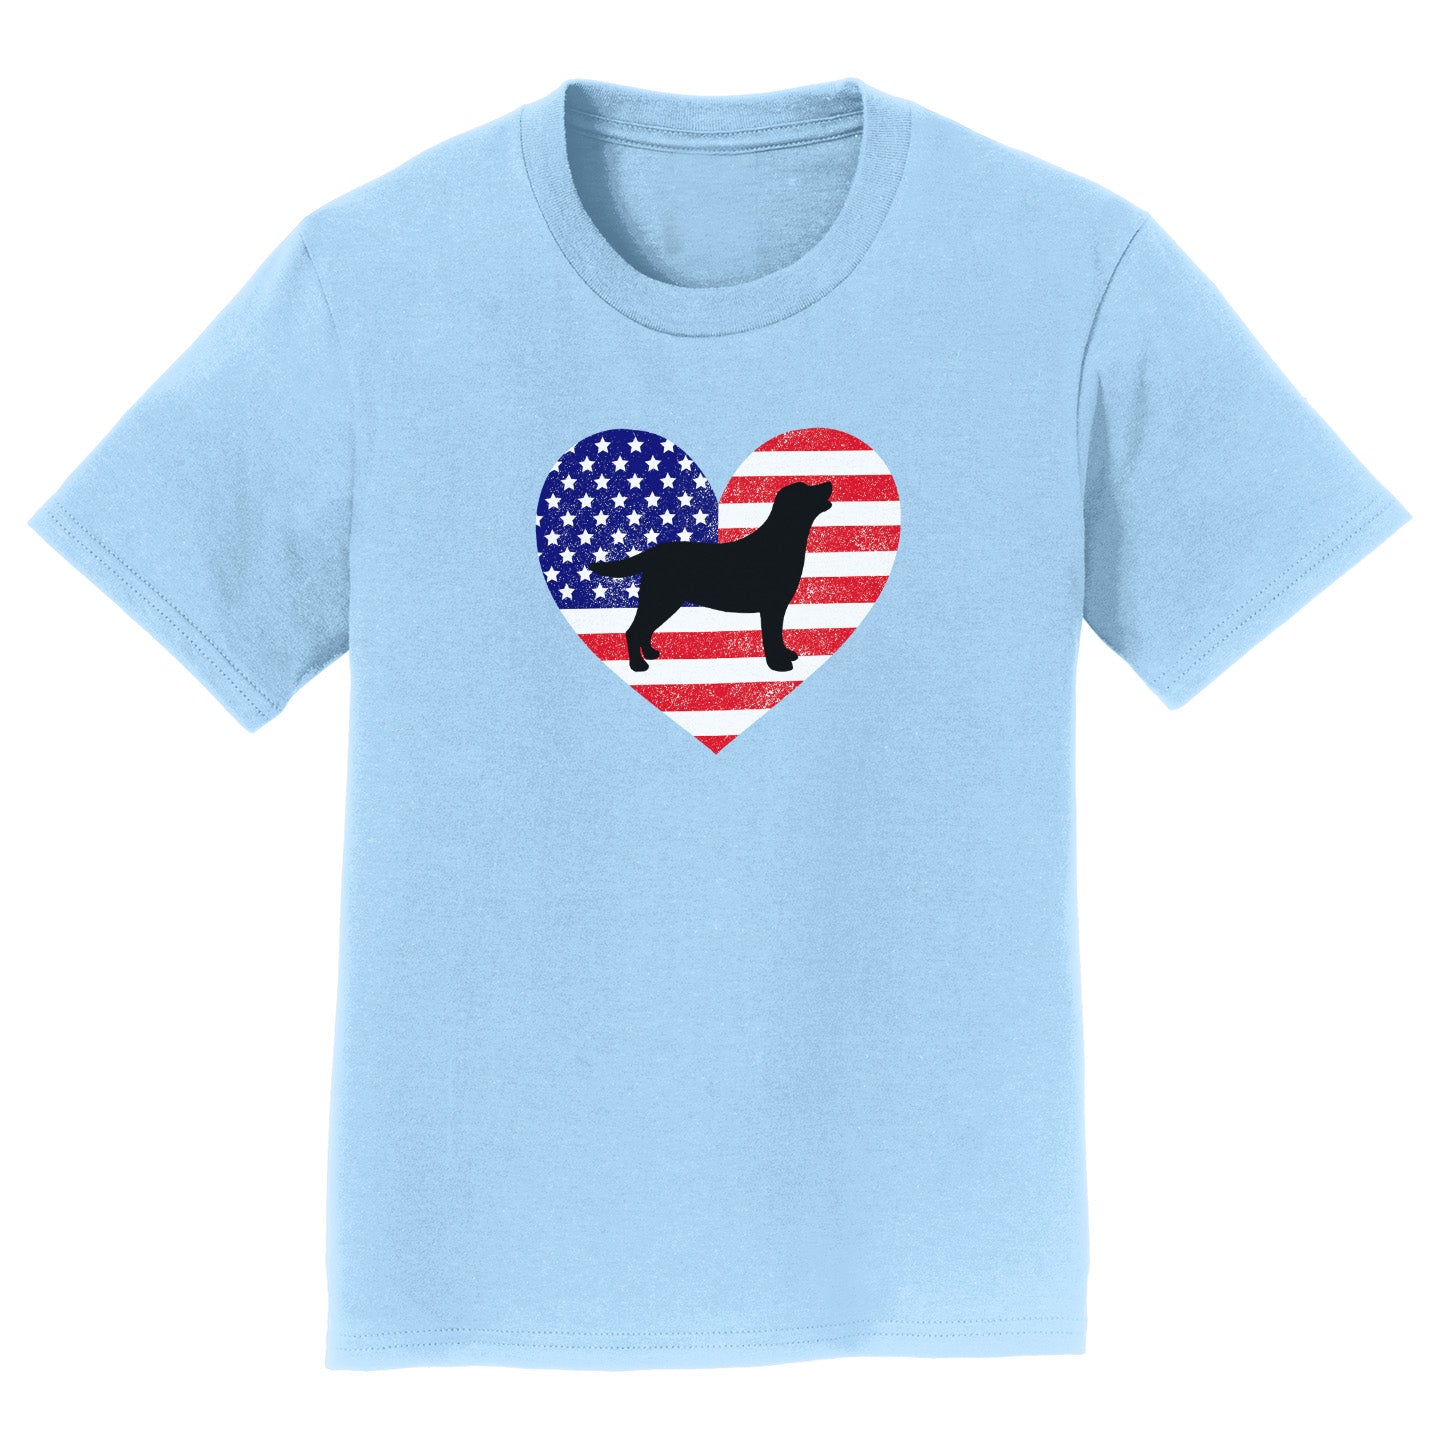 USA Flag Lab Silhouette - Kids' Unisex T-Shirt